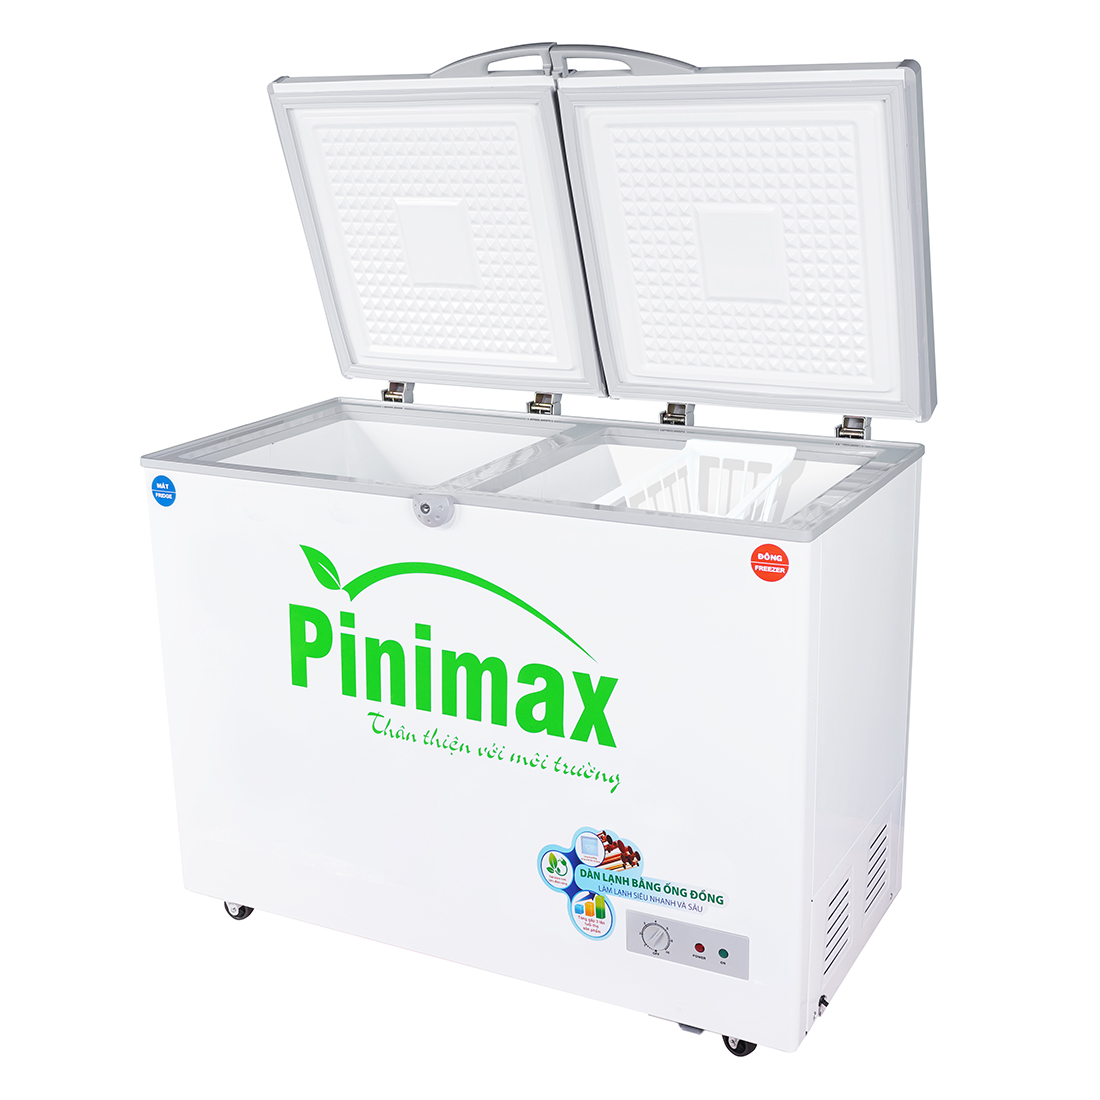 Tủ đông Pinimax PNM29WF